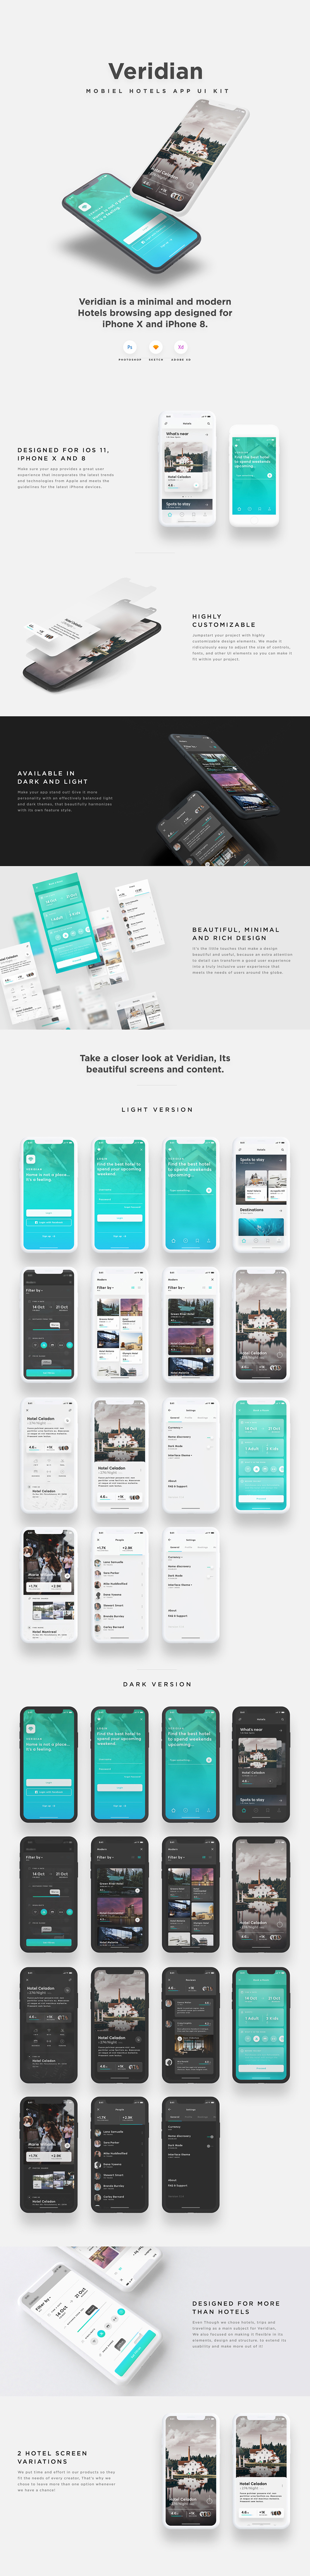 Veridian - Hotel Mobile App Kit - Adobe XD UI Kit Sample